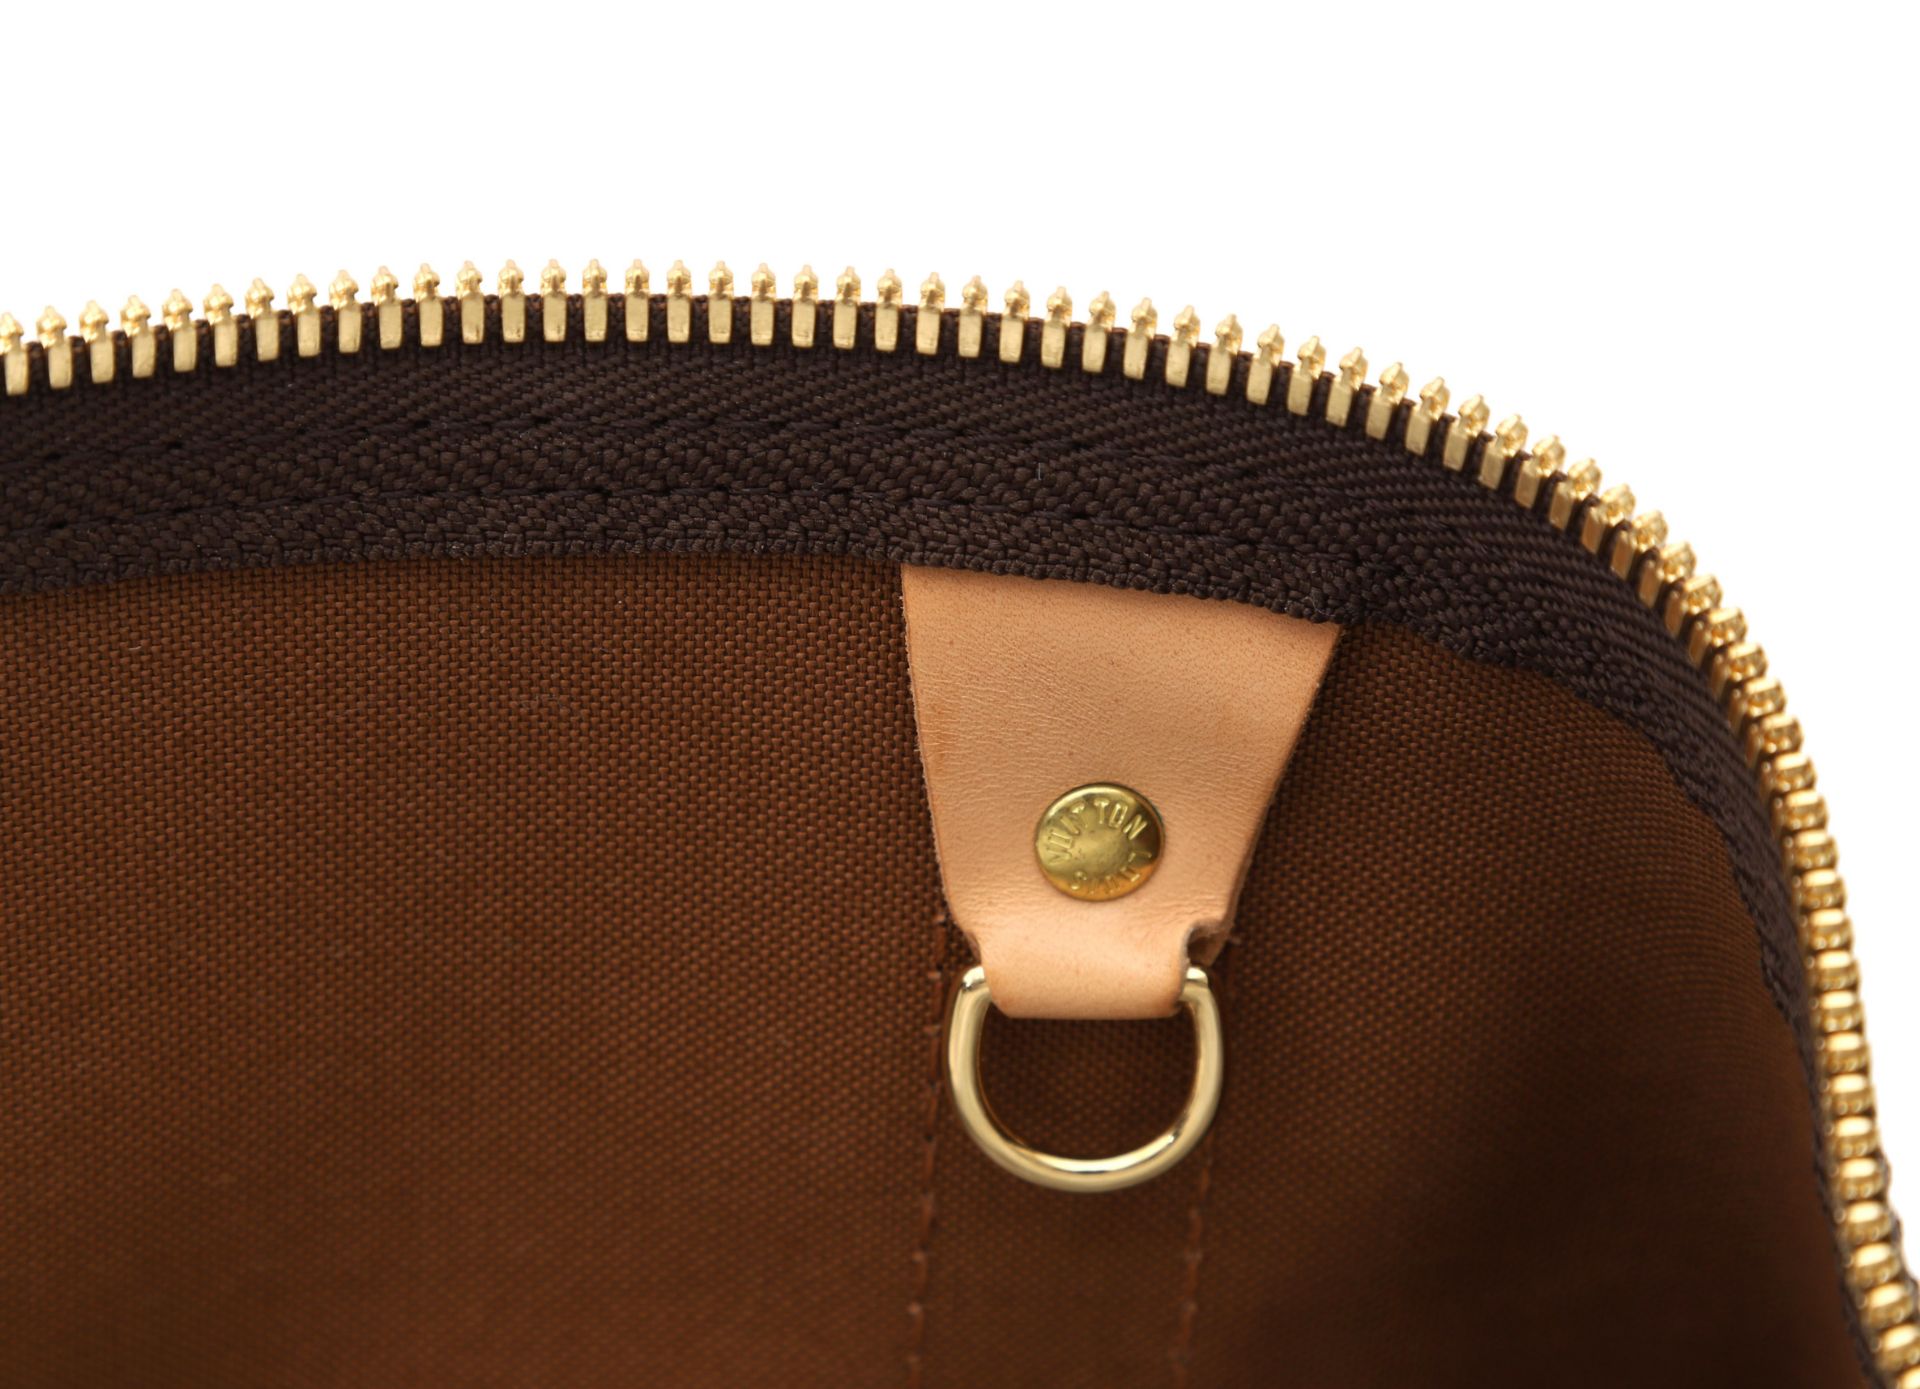 An original vintage Louis Vuitton travel bag, model Keepall 55 - Bild 4 aus 13